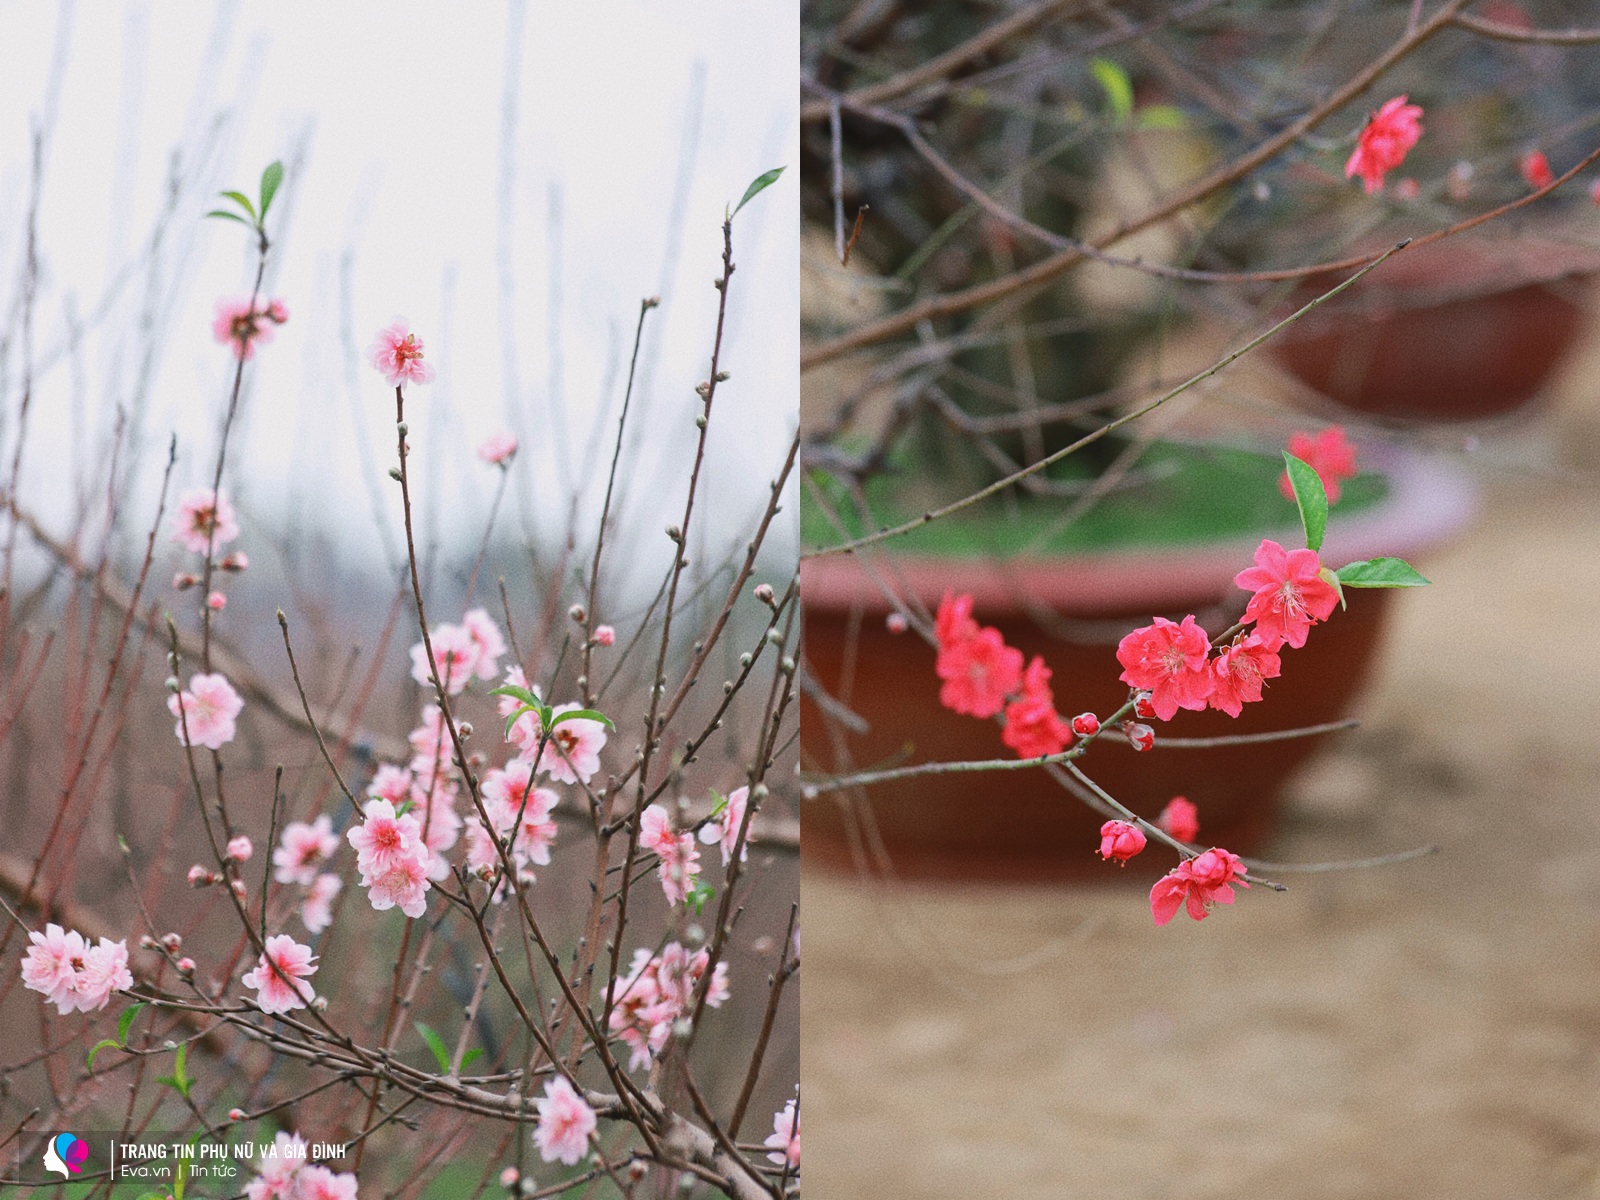 Cánh hoa đào hồng thắm và đỏ rực xua đi cái lạnh của mùa đông, khiến lòng người thêm ấm áp hơn trong dịp Tết đến xuân về.